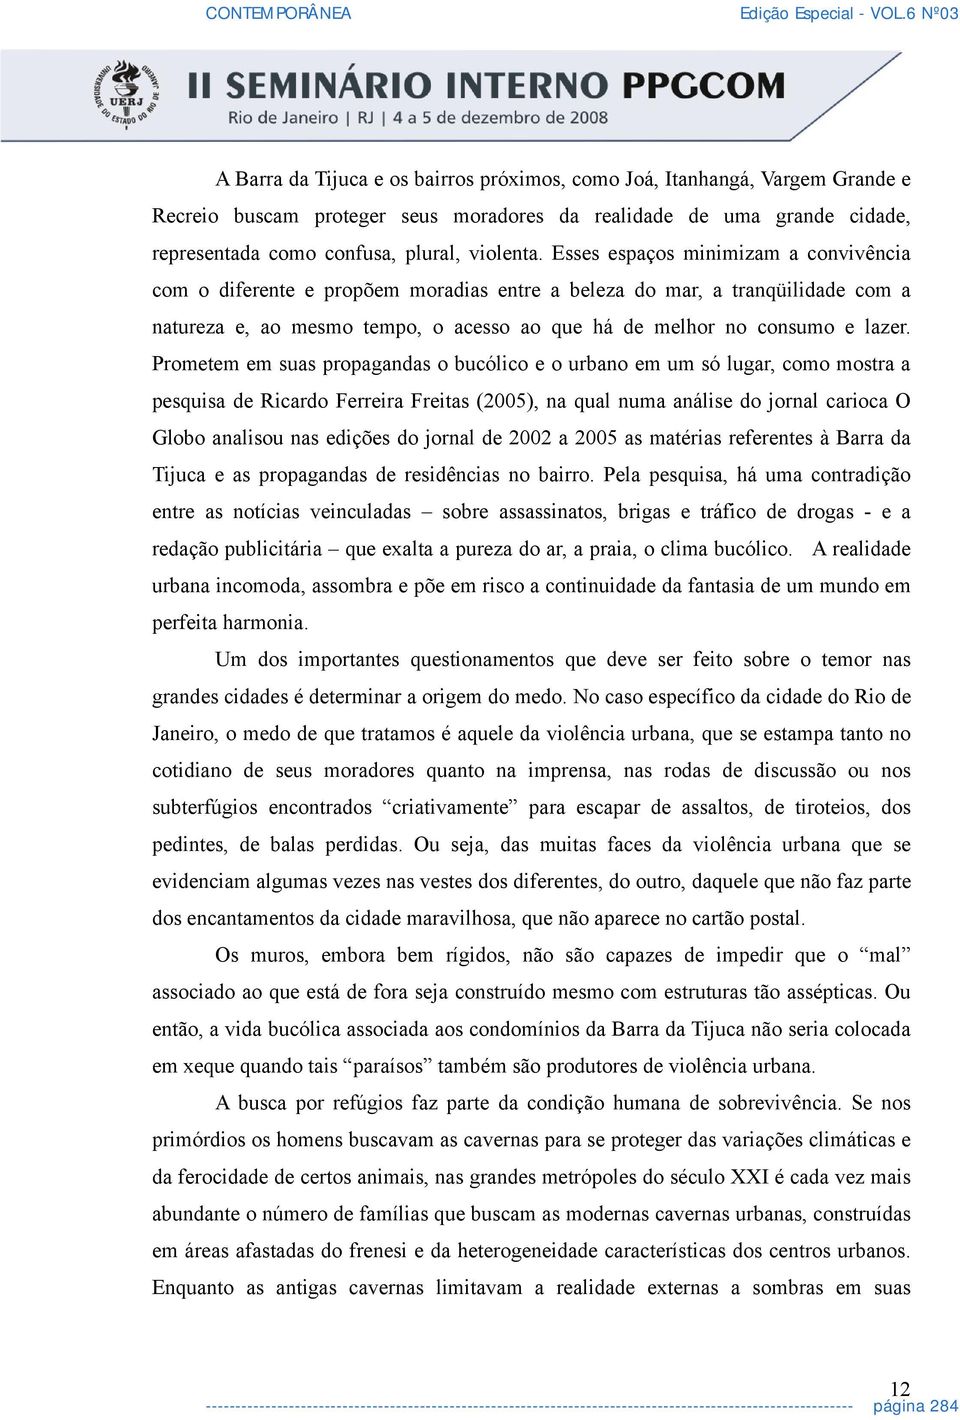 Prometem em suas propagandas o bucólico e o urbano em um só lugar, como mostra a pesquisa de Ricardo Ferreira Freitas (2005), na qual numa análise do jornal carioca O Globo analisou nas edições do